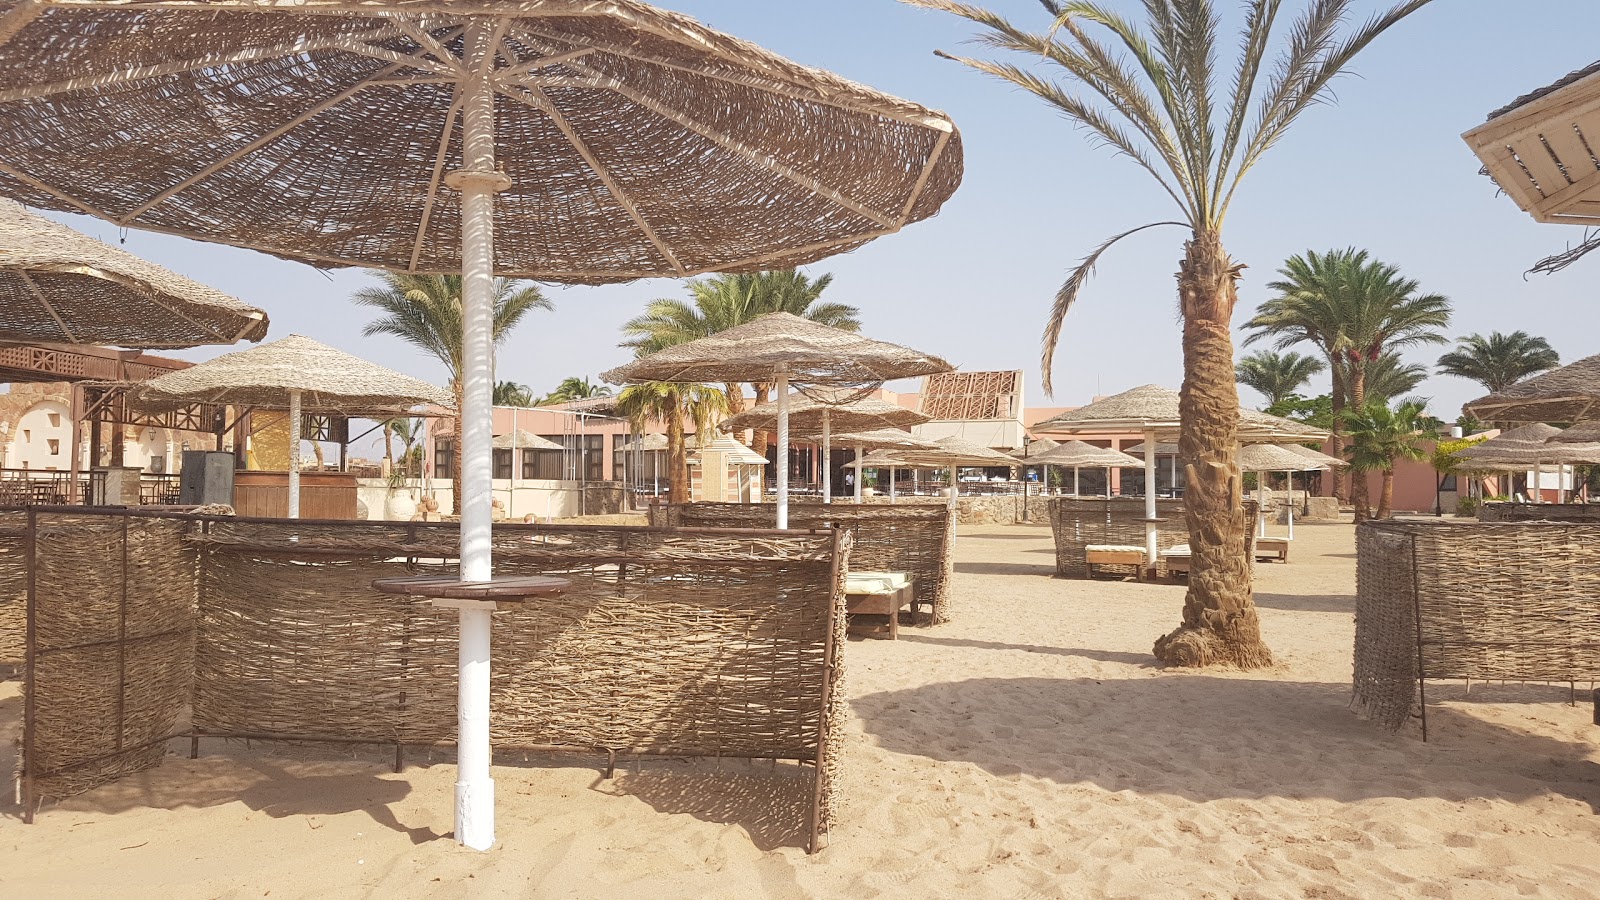 Foto de Safaga beach - lugar popular entre los conocedores del relax